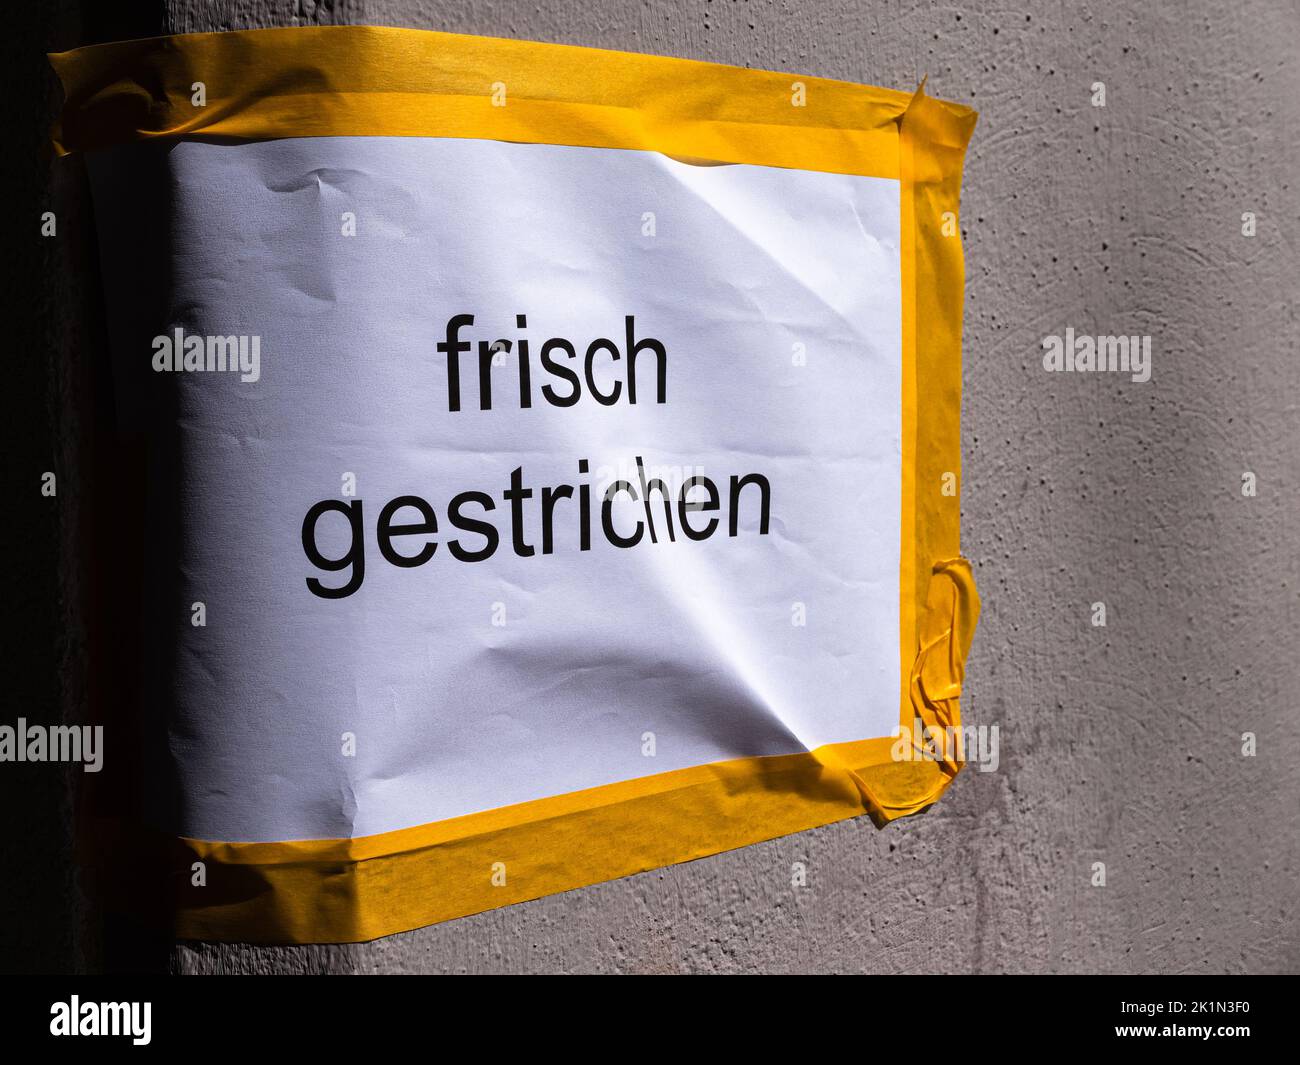 Inscripción alemana en la pared: Frisch gestrichen. Traducción al inglés: Fresh painted Foto de stock